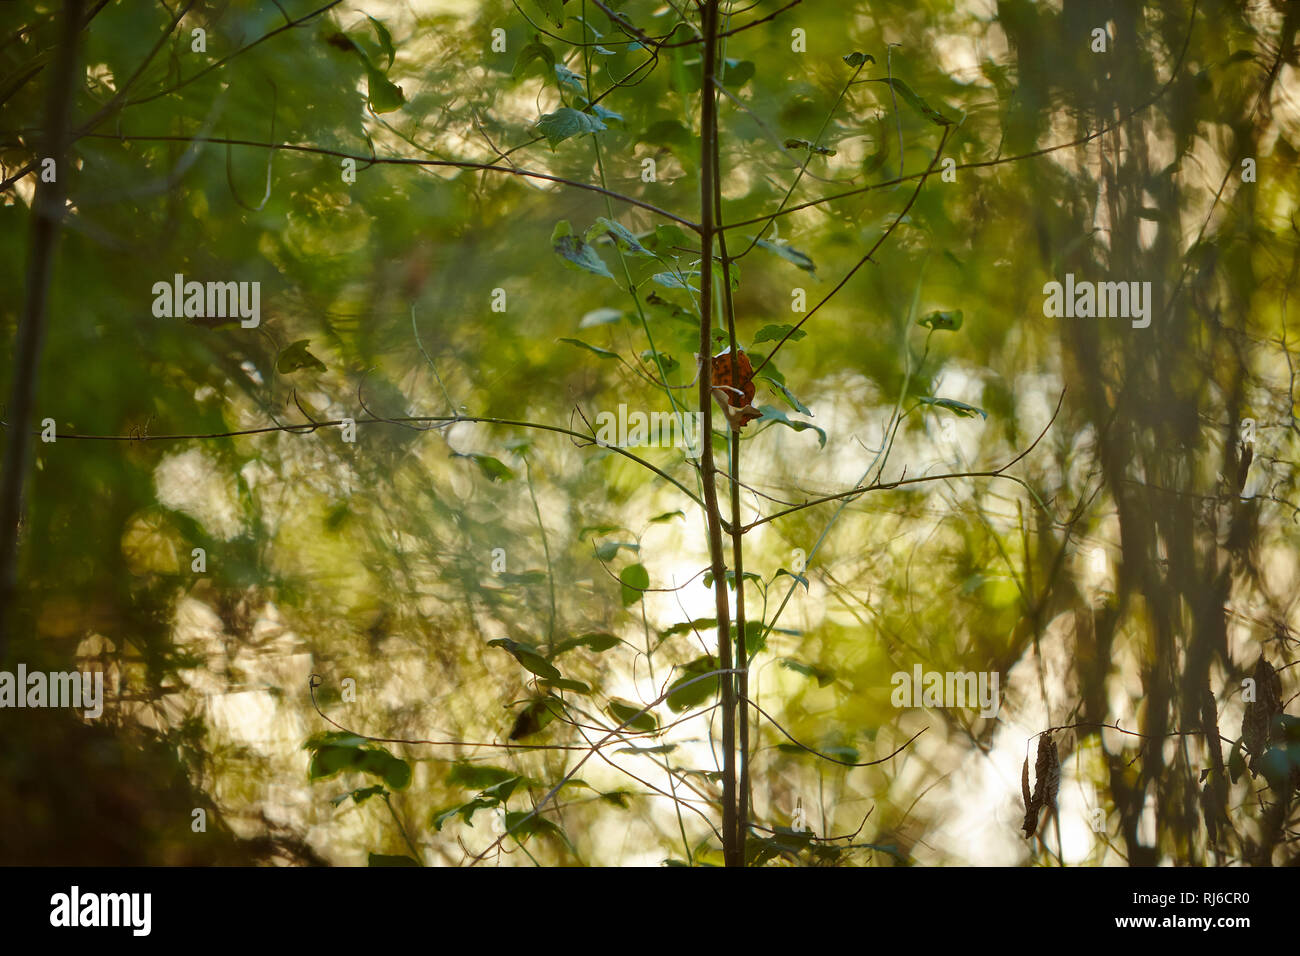 Blätter und Äste im Sonnenlicht, Hintergrund unscharf Stock Photo